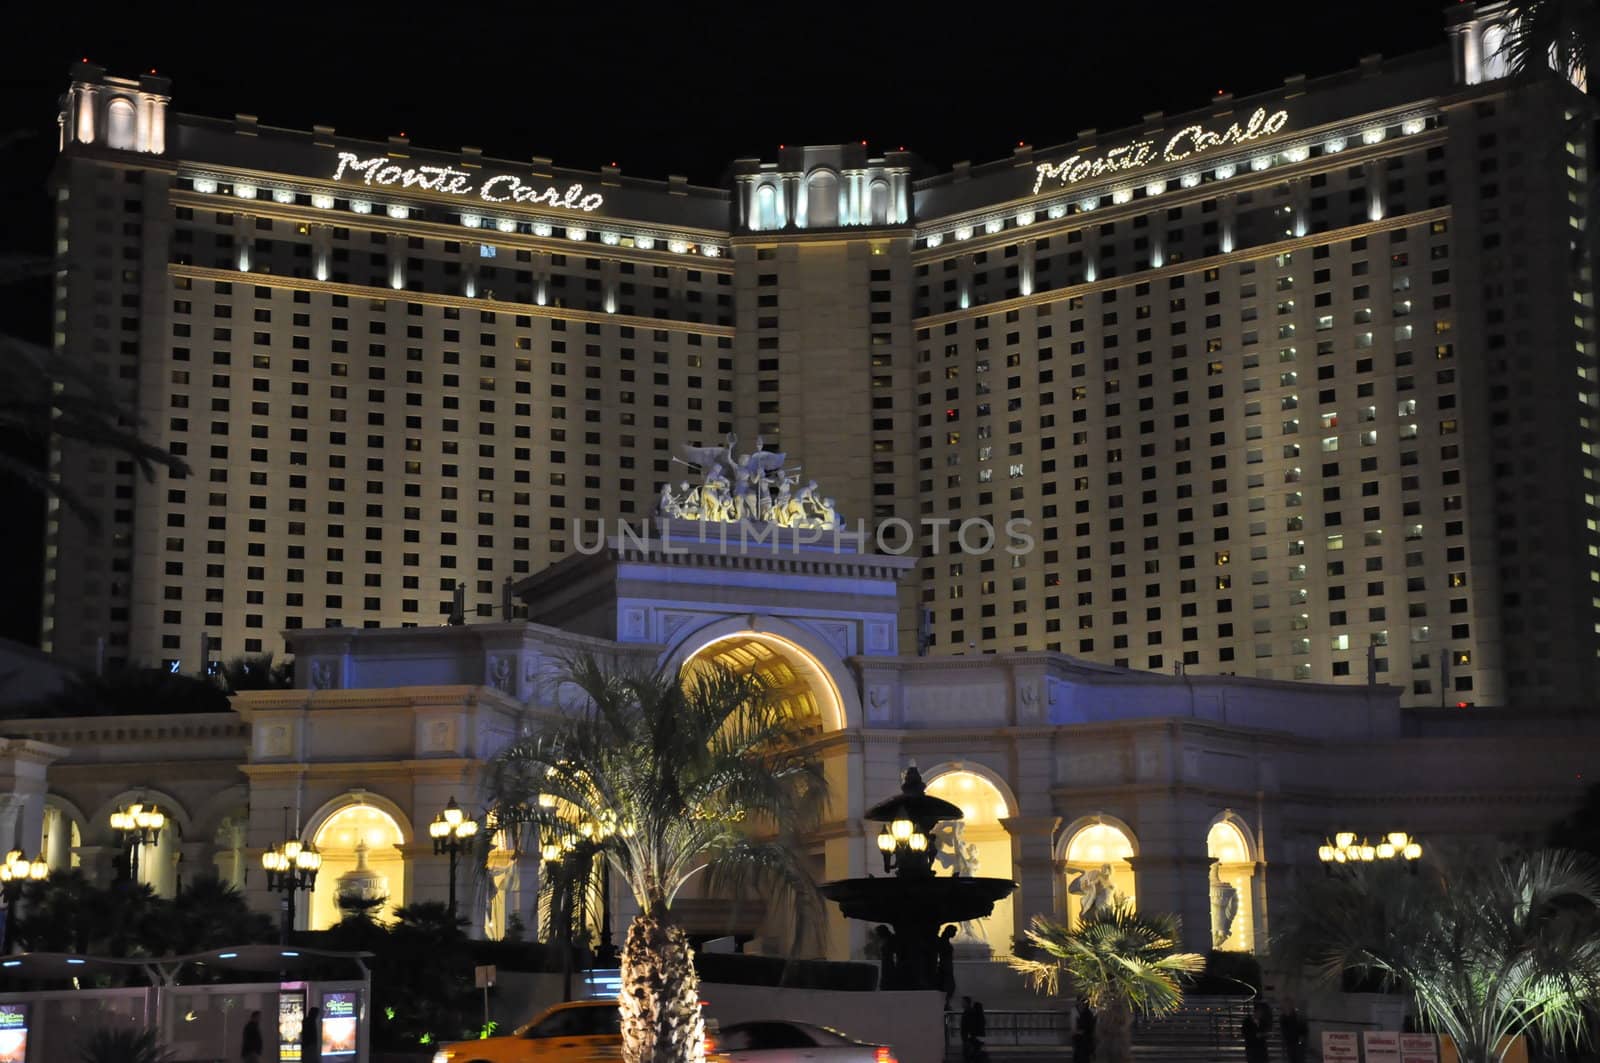 Monte Carlo Hotel and Casino in Las Vegas, Nevada